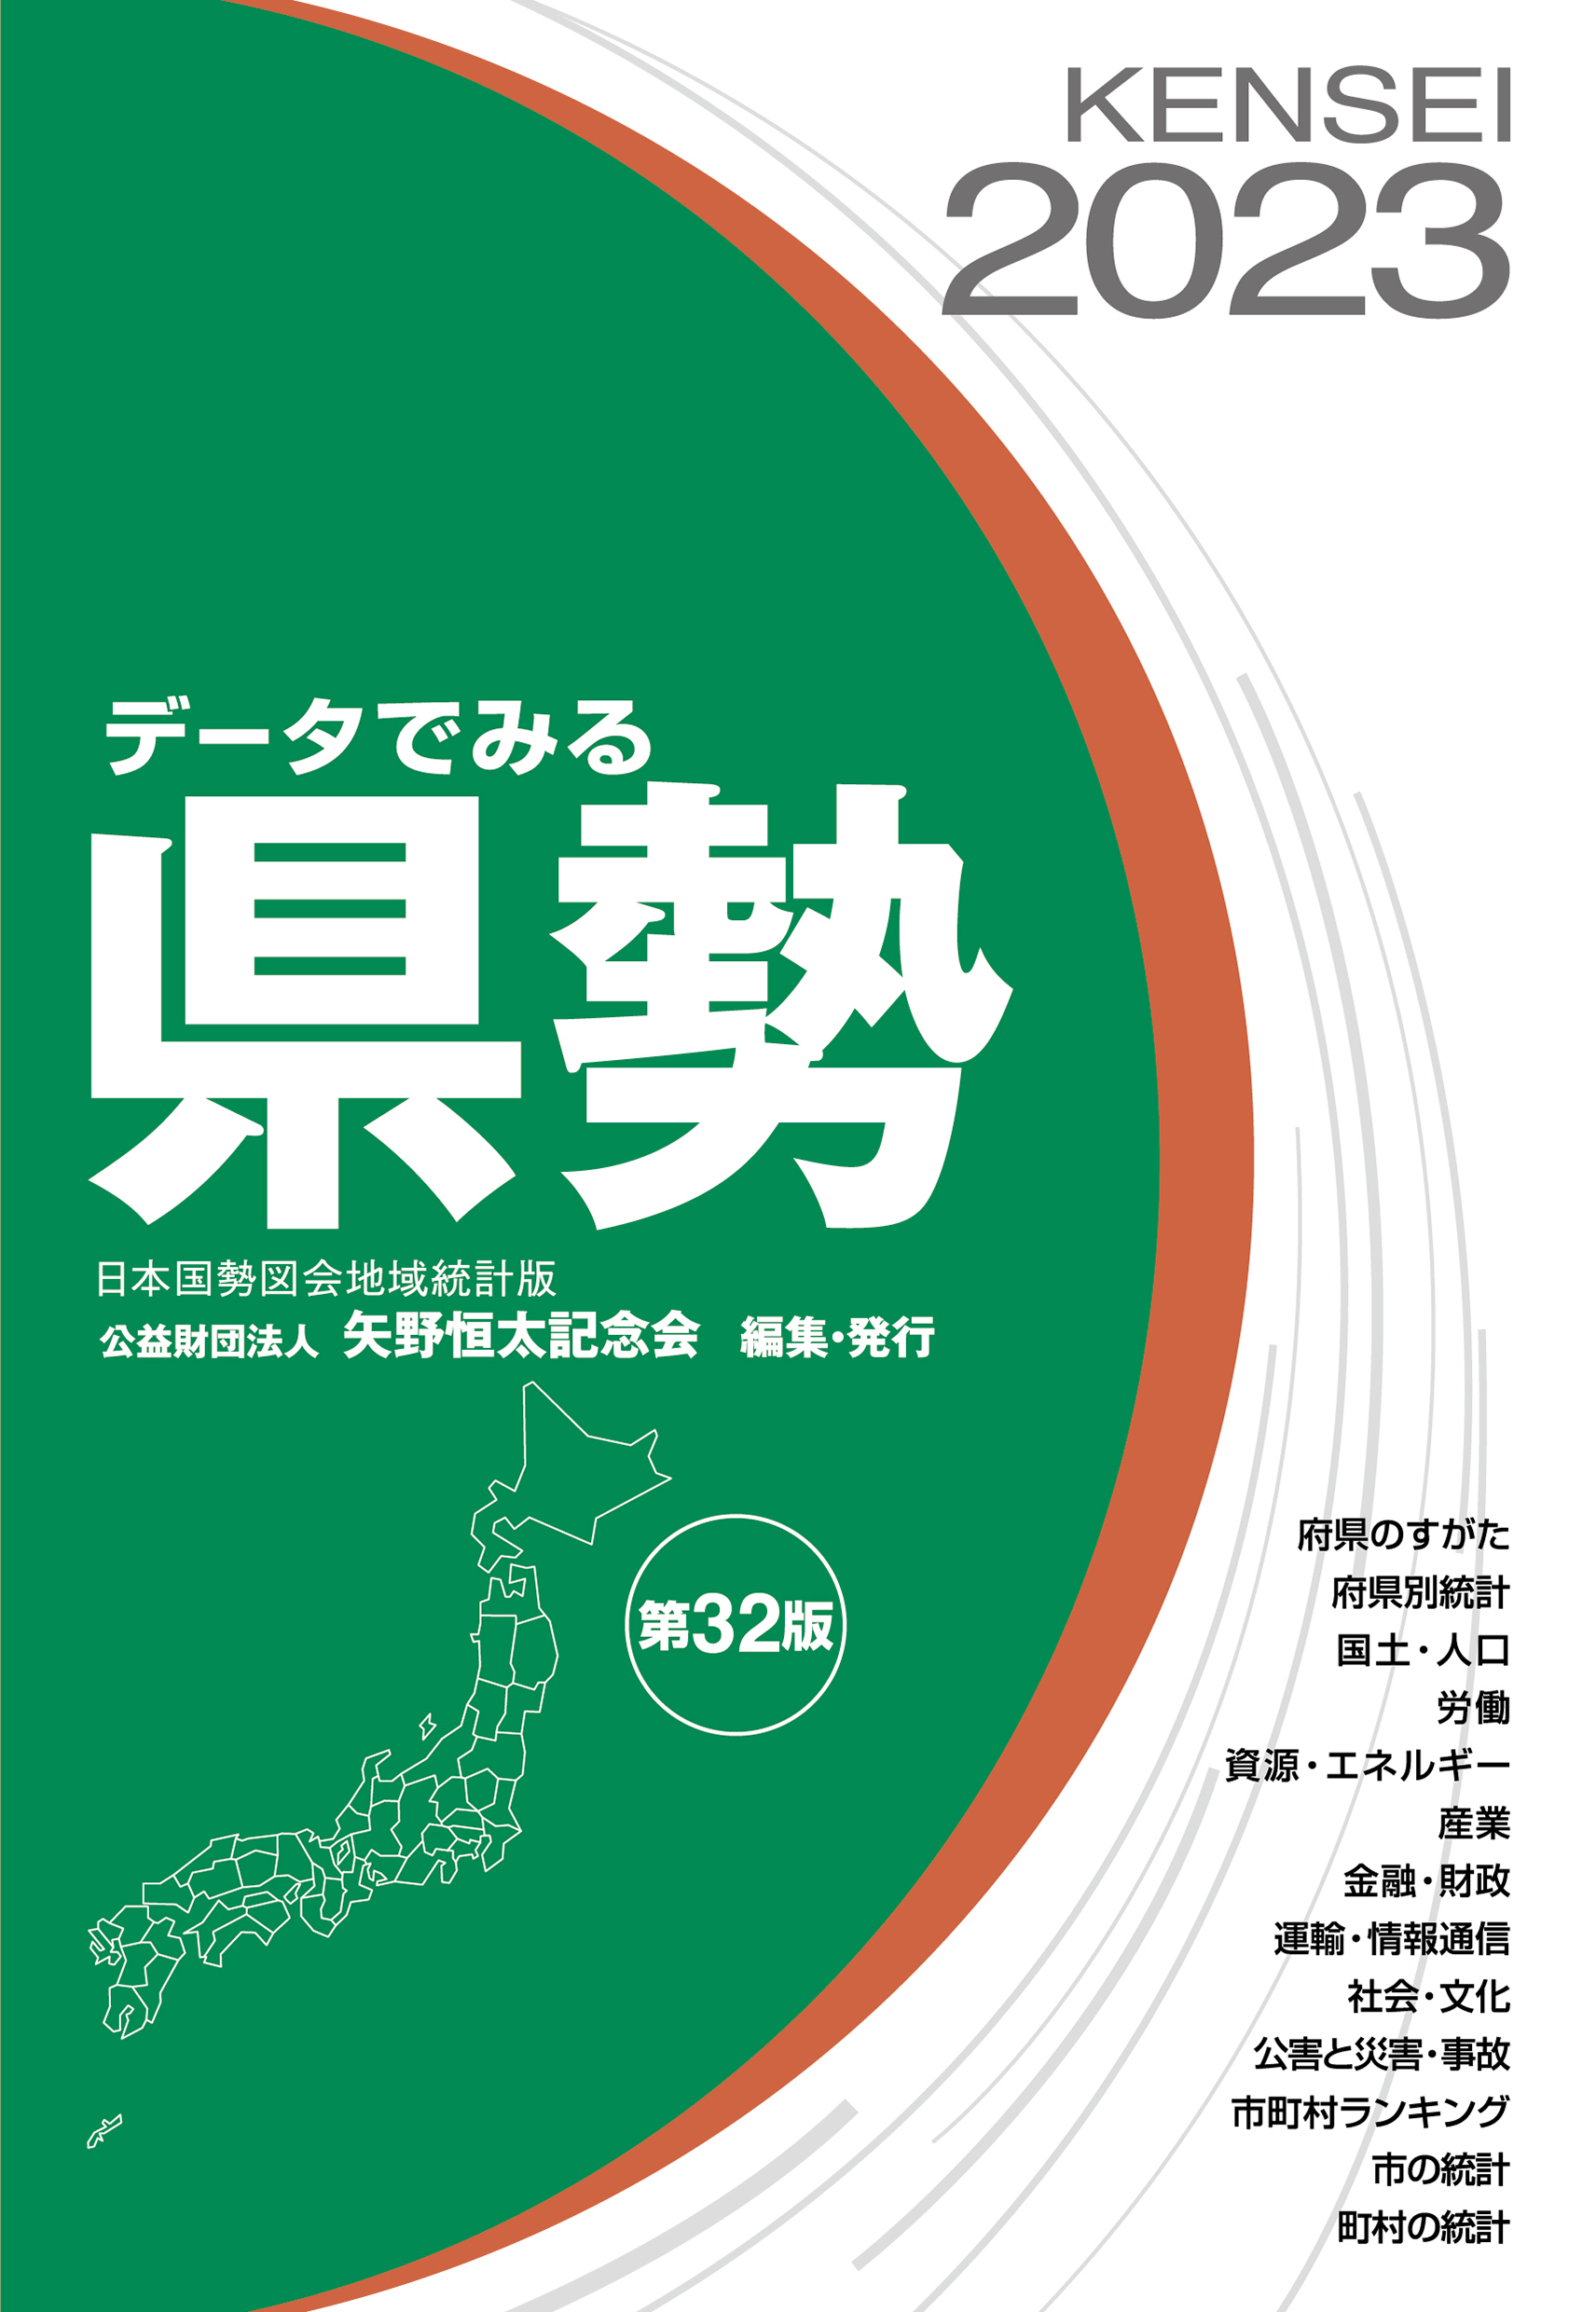 データでみる県勢 日本国勢図会地域統計版 ’91 92